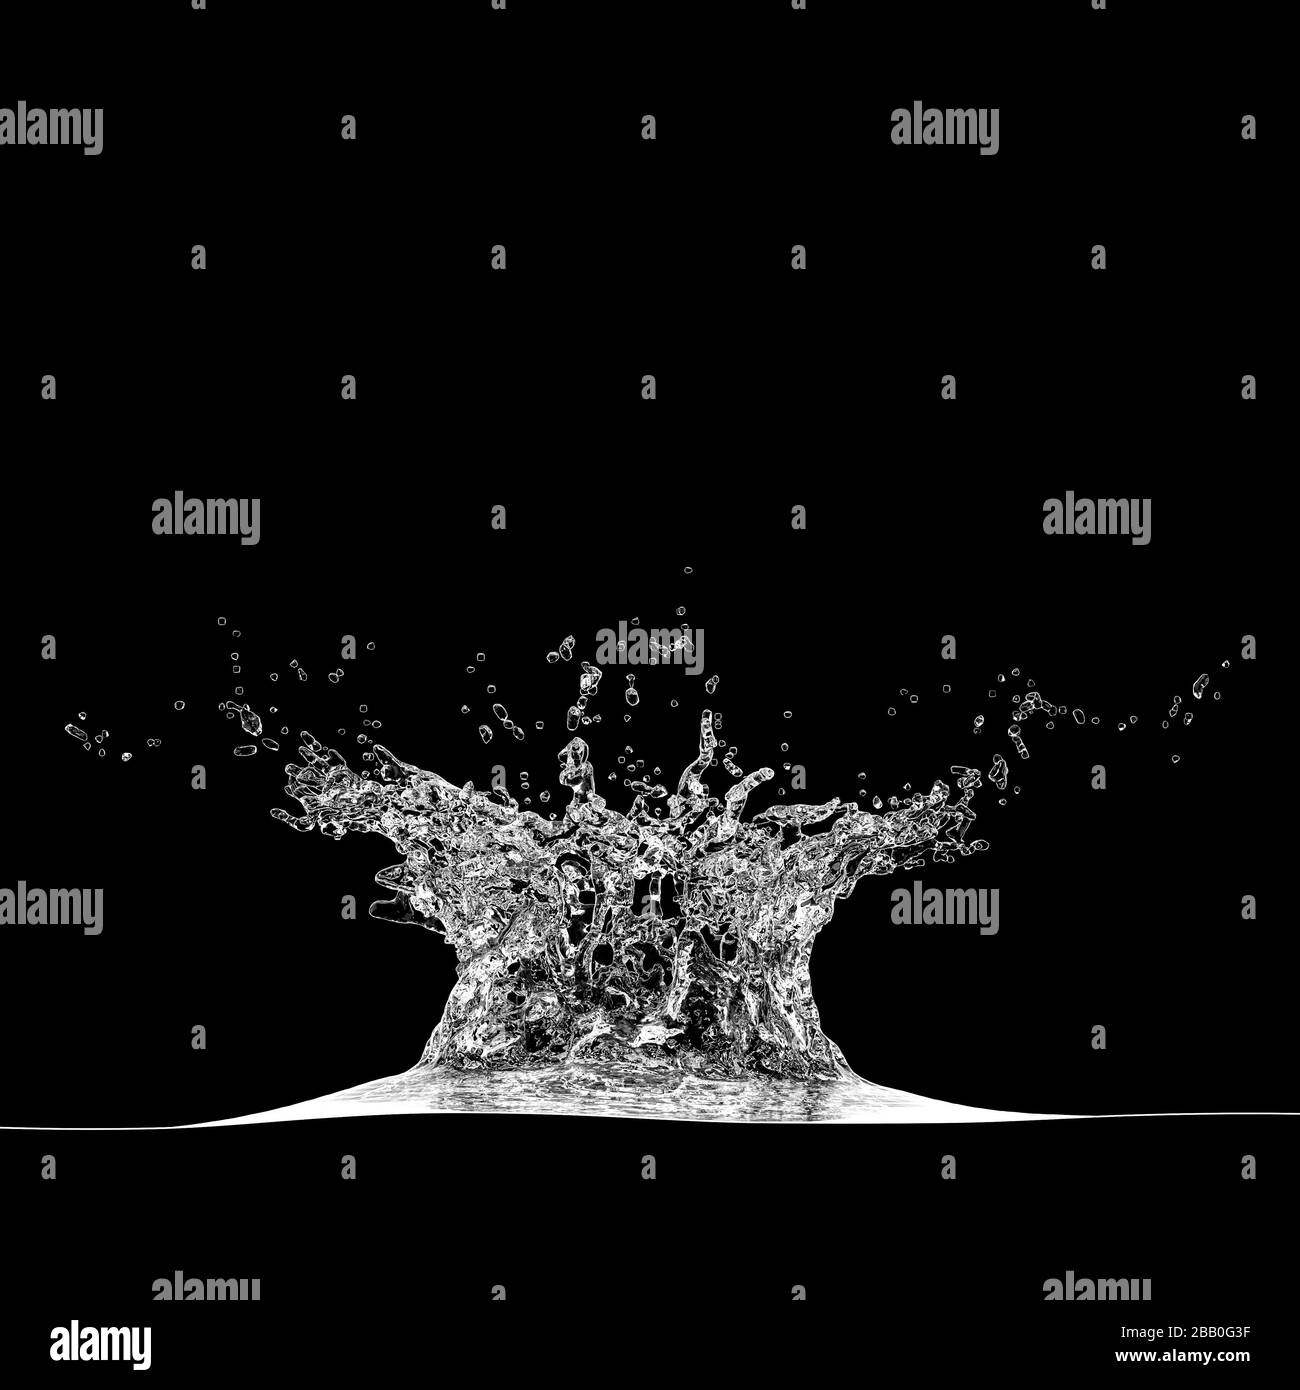 dettaglio di uno spruzzo d'acqua su fondo nero. 3d rende il concetto di freschezza. Foto Stock